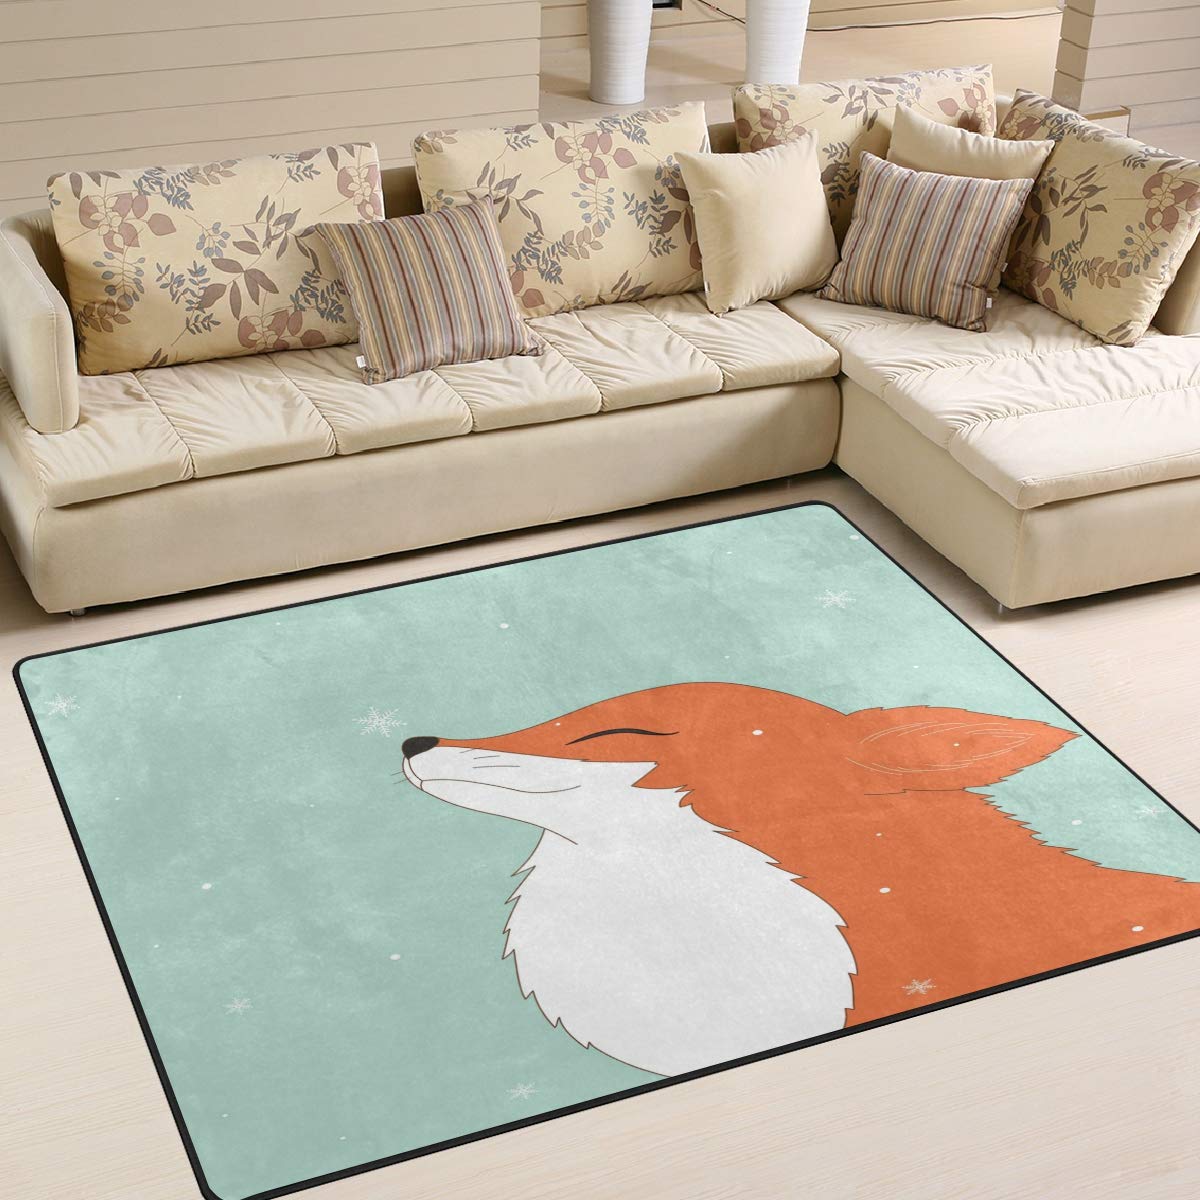 Use7 Teppich mit Cartoon-Fuchs-Motiv, für Wohnzimmer, Schlafzimmer, 203 x 147,3 cm